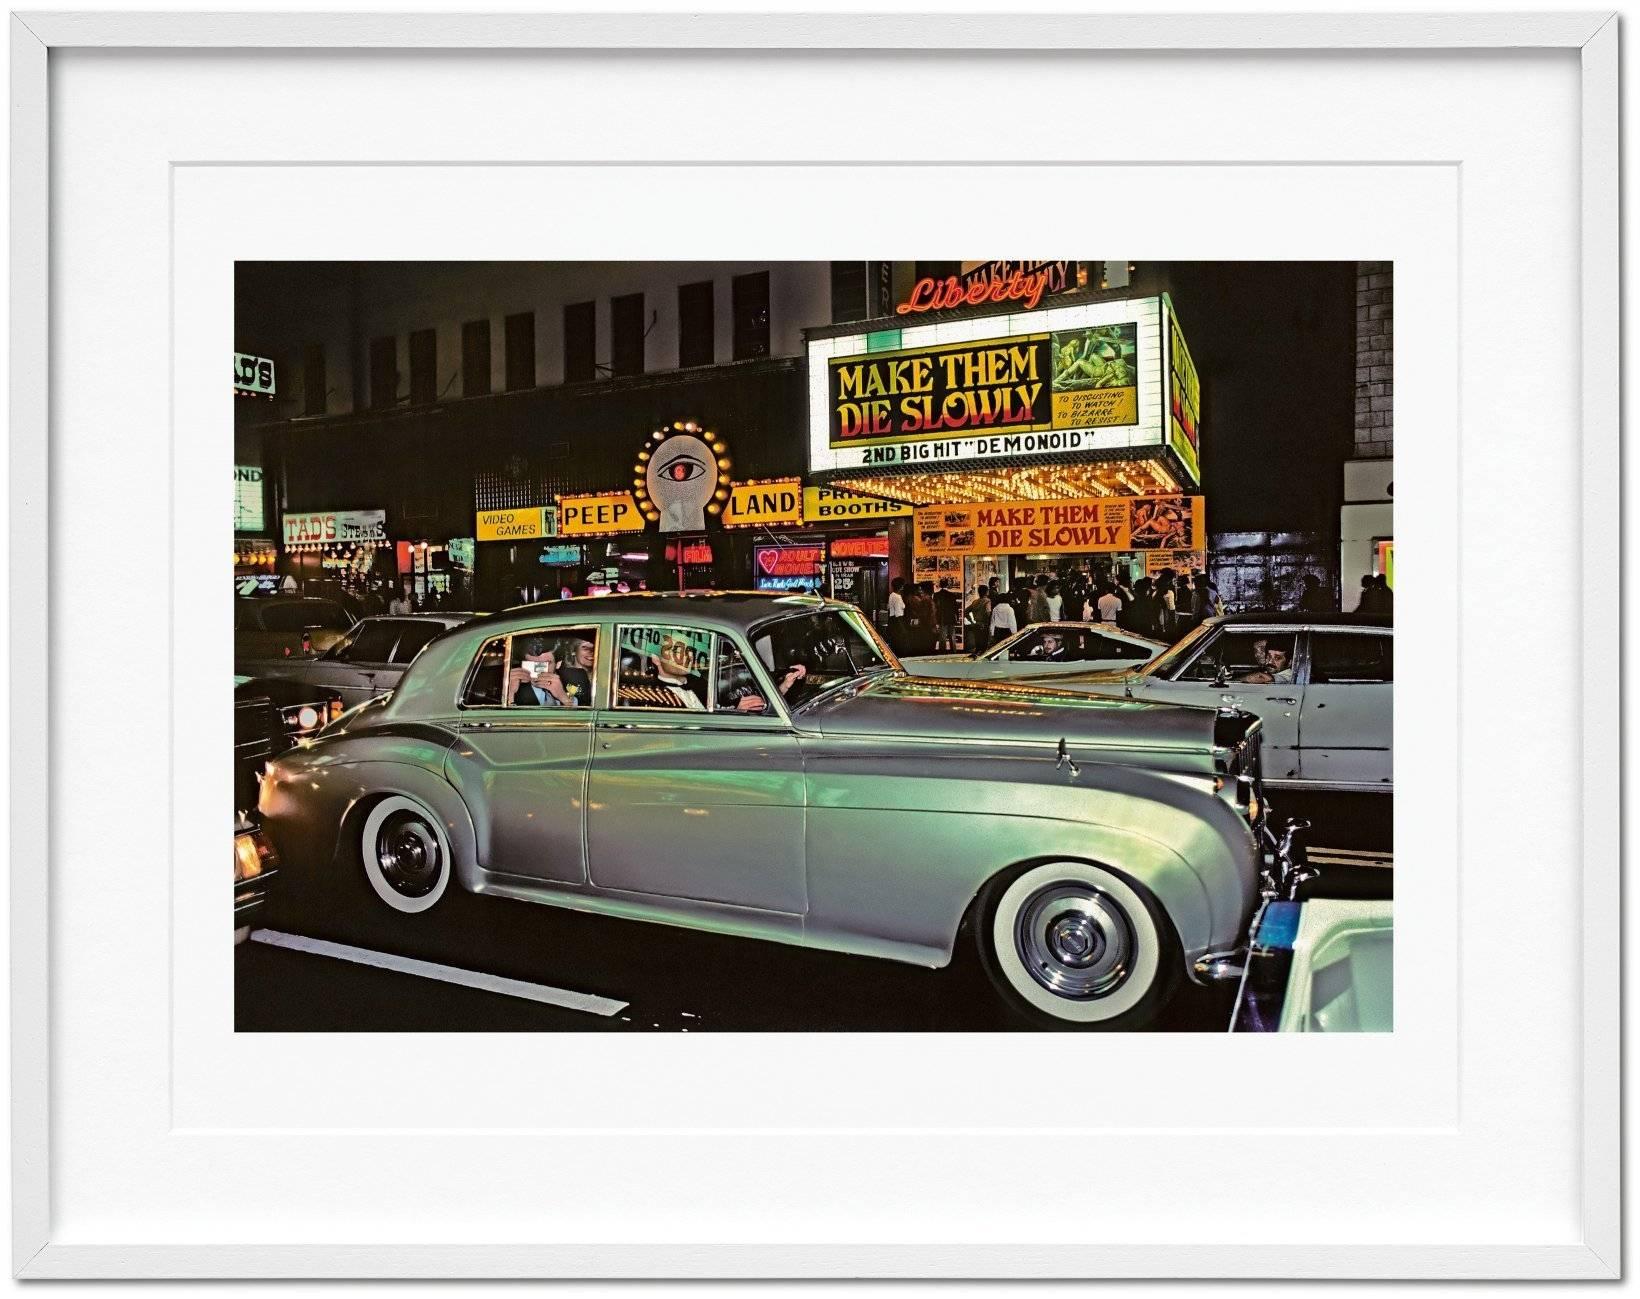 Eine stattliche Kunstedition, die die erste große Retrospektive der Karriere von Marvin E. Newman präsentiert, mit rund 170 Bildern sowie einem signierten fotografischen Abzug 42nd Street, 1983, einer Szene von intensivem urbanem